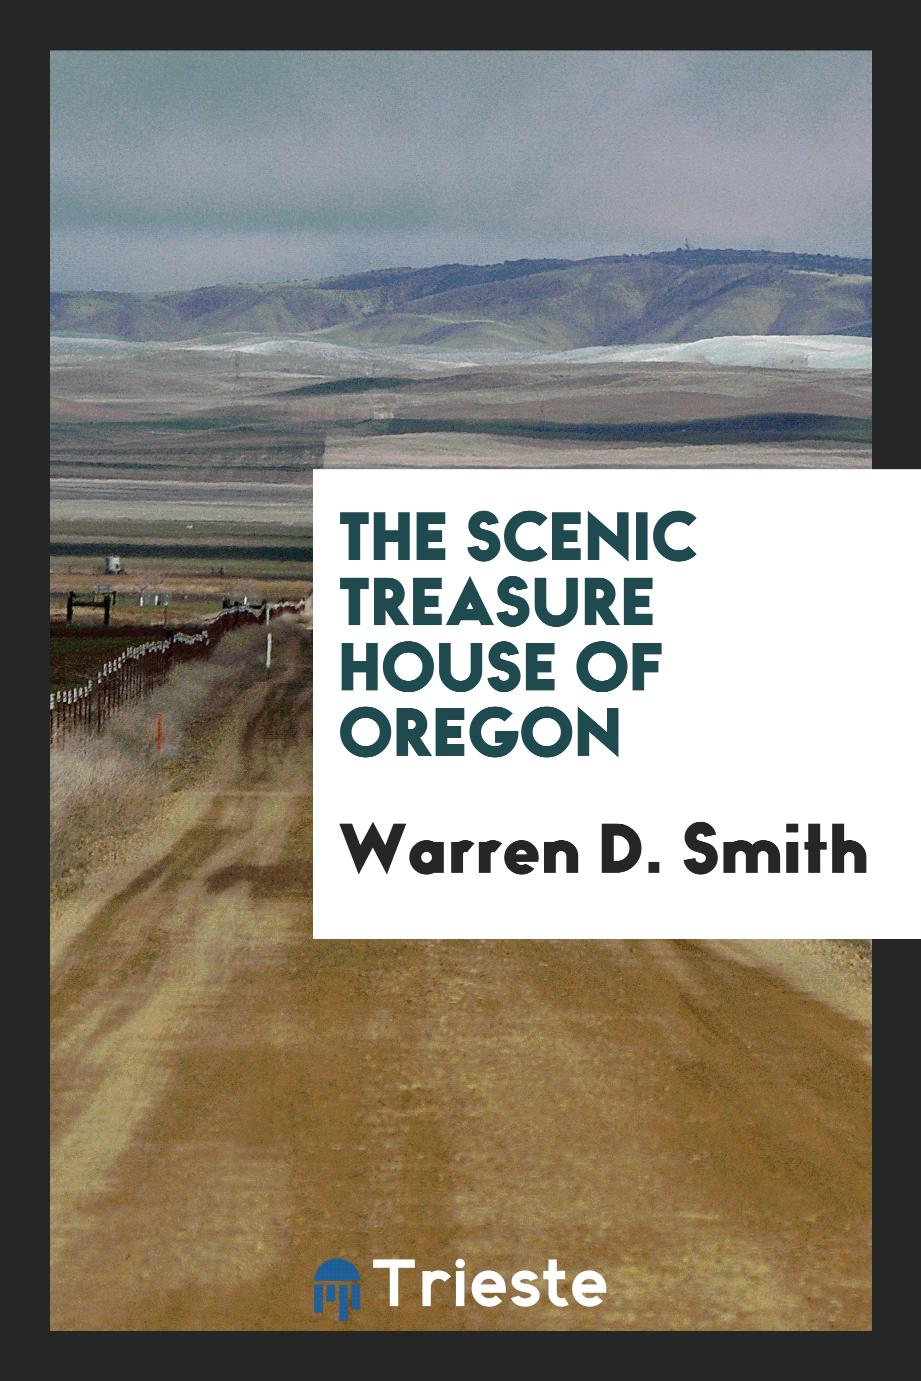 The scenic treasure house of Oregon